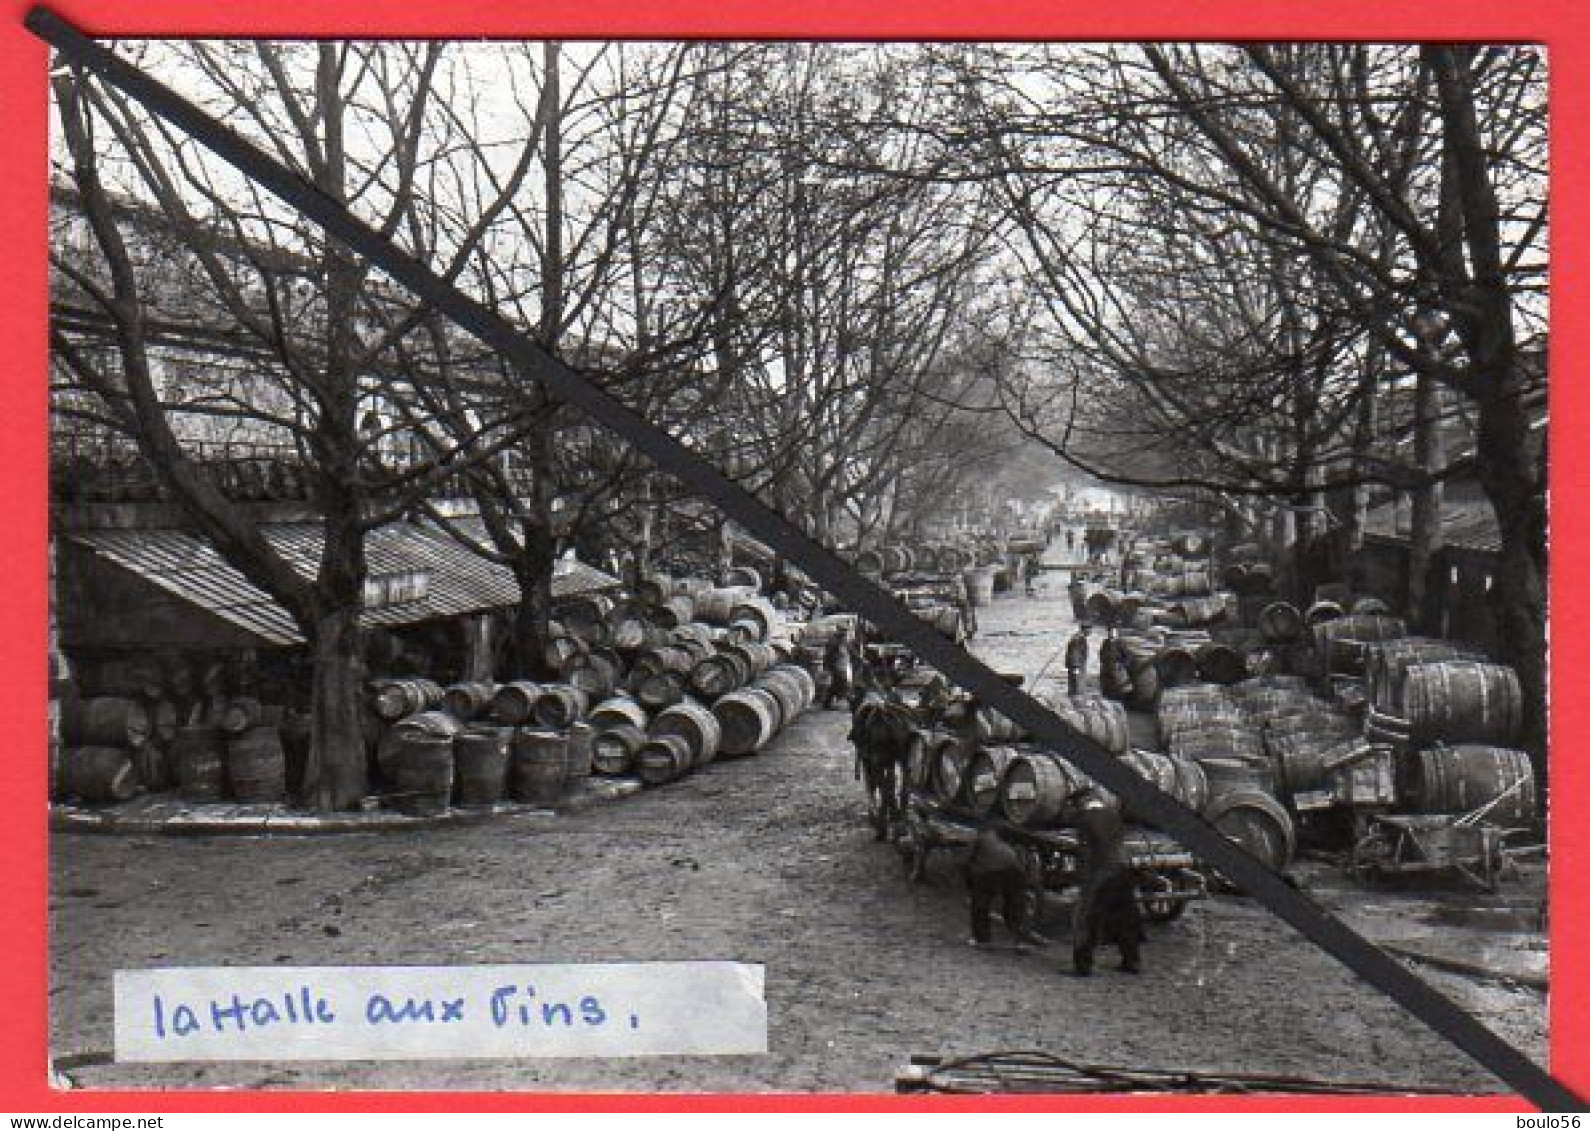 CPSM-(Lots -Vrac)5-99-9Cartes-PARIS-la Tour EFFEL-1956-Monmartre Pl du Tertre-1955.-Paris la Nuit.1957."1964.-1963.-----